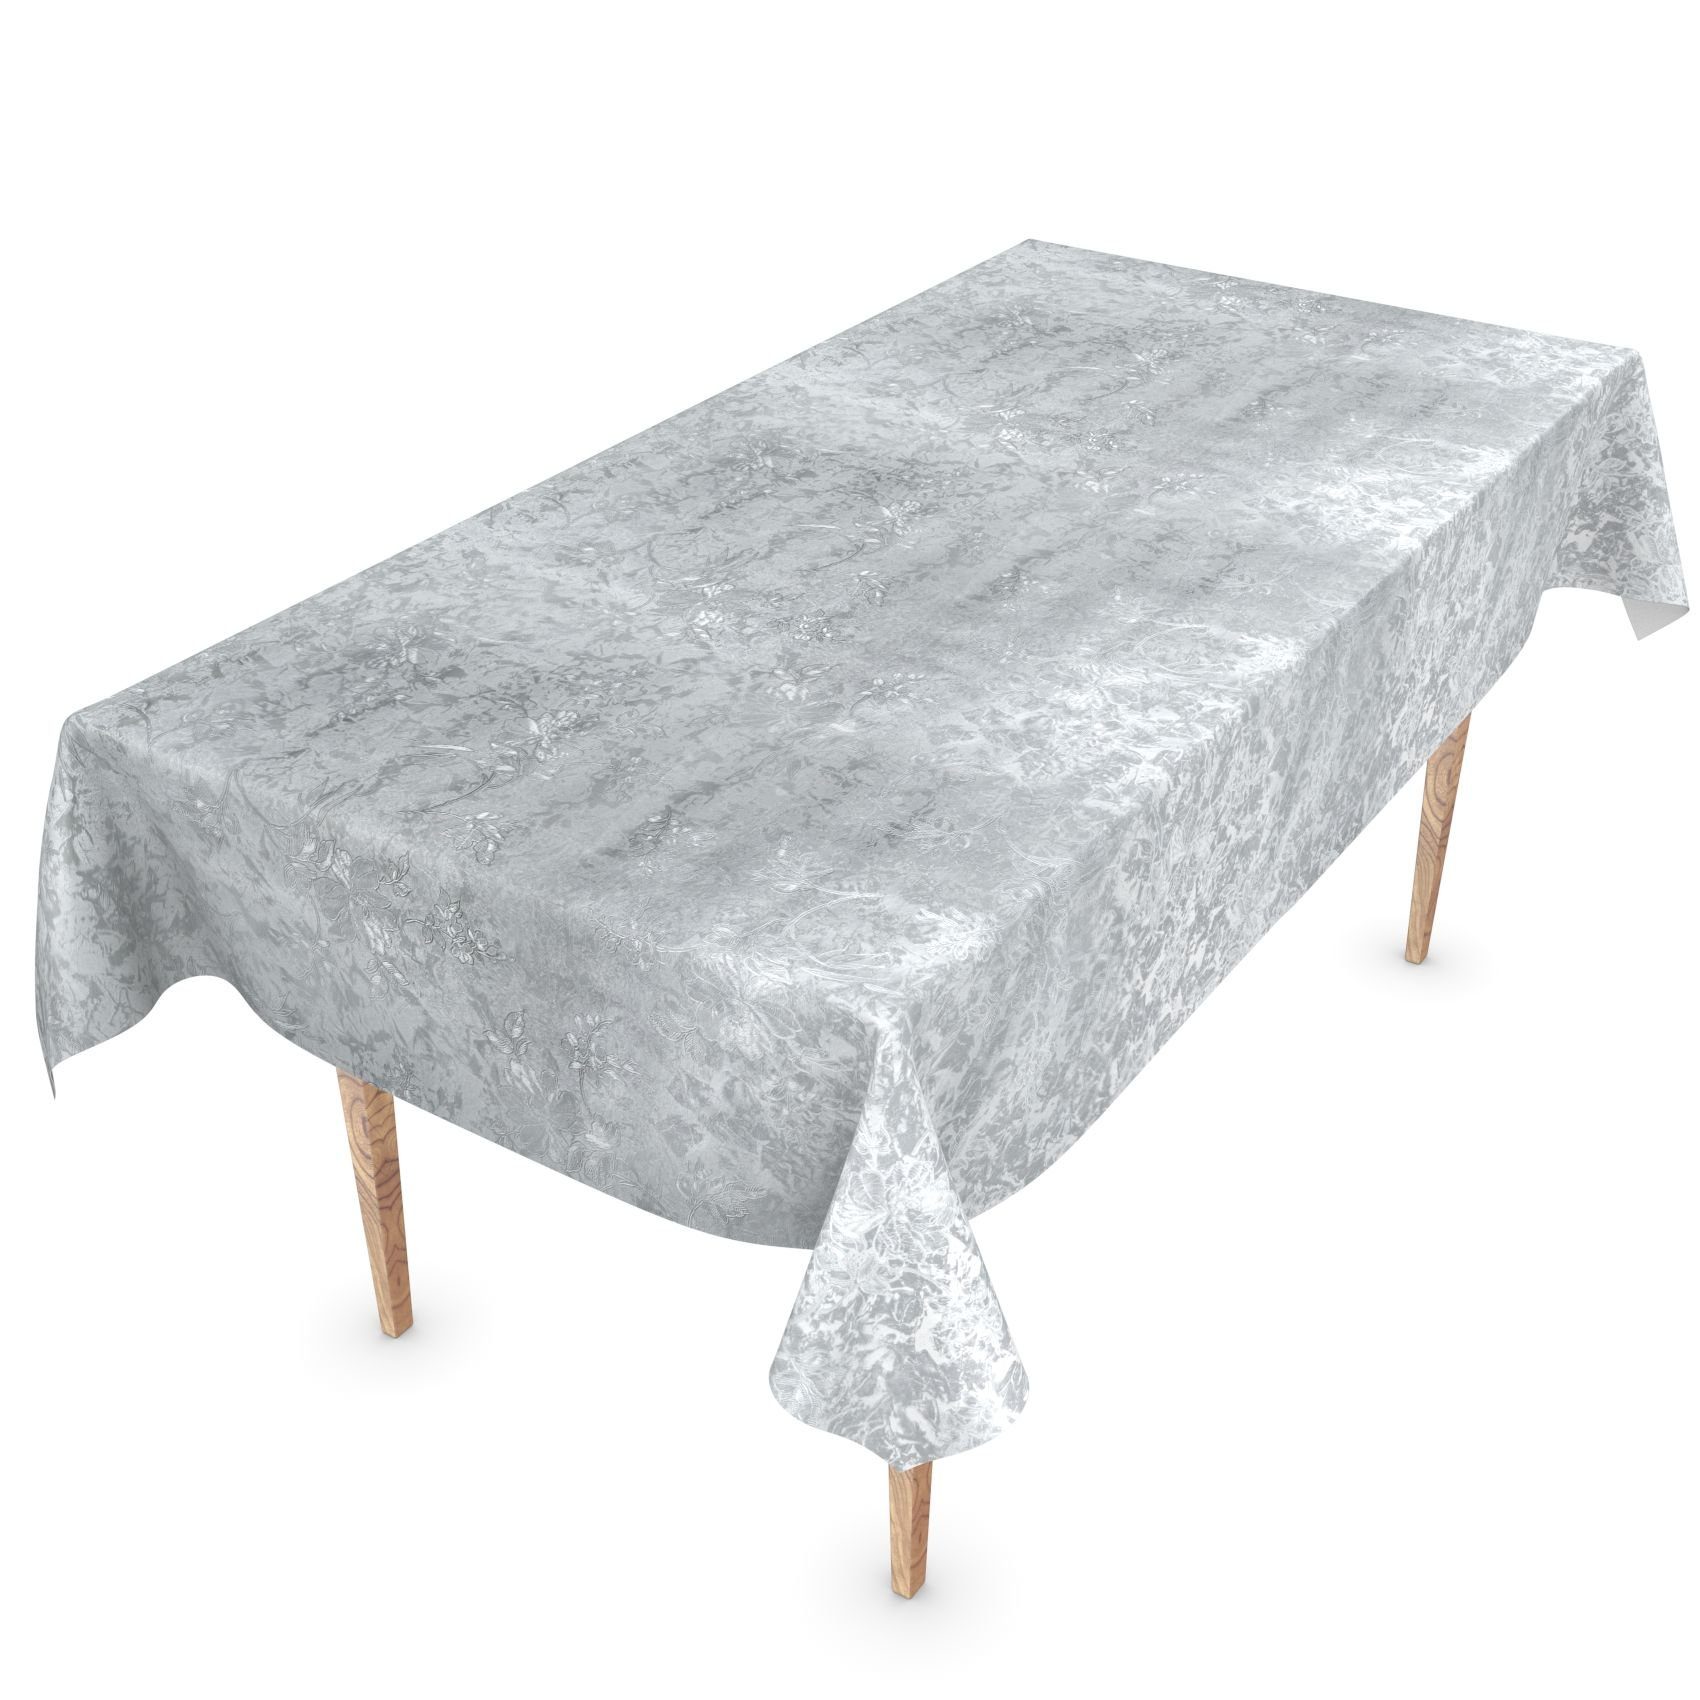 ANRO Tischdecke Tischdecke Wachstuch Einfarbig Grau Robust Wasserabweisend Breite 140, Glatt | Tischdecken